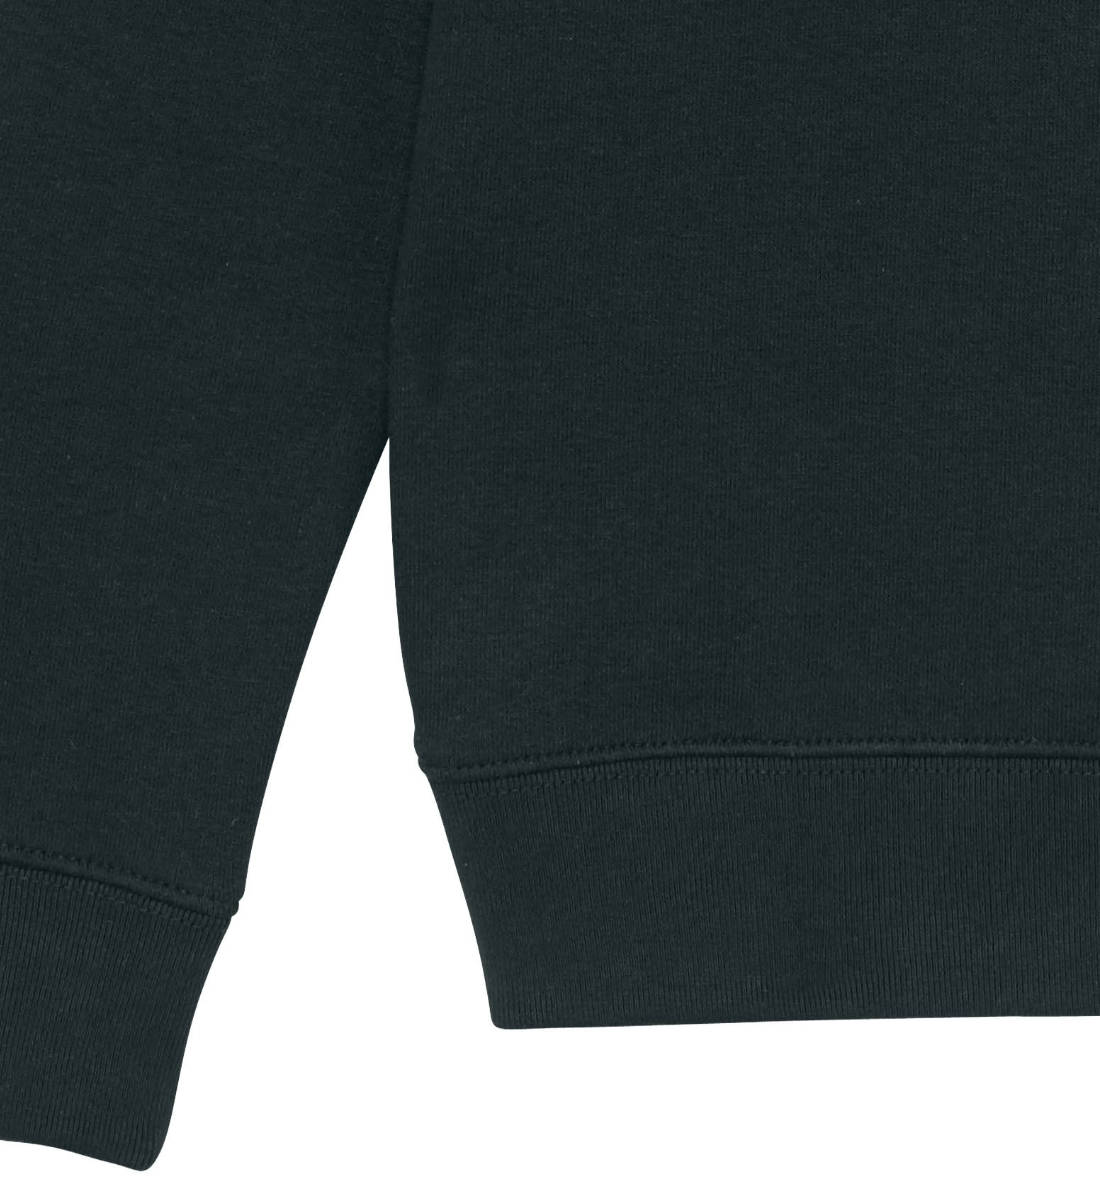 Schwarzes Sweatshirt Unisex für Kinder rückseitig bedruckt in weiß mit dem Design der You Decide Kollektion und dem Logo Schriftzug von Roger Rockawoo Clothing